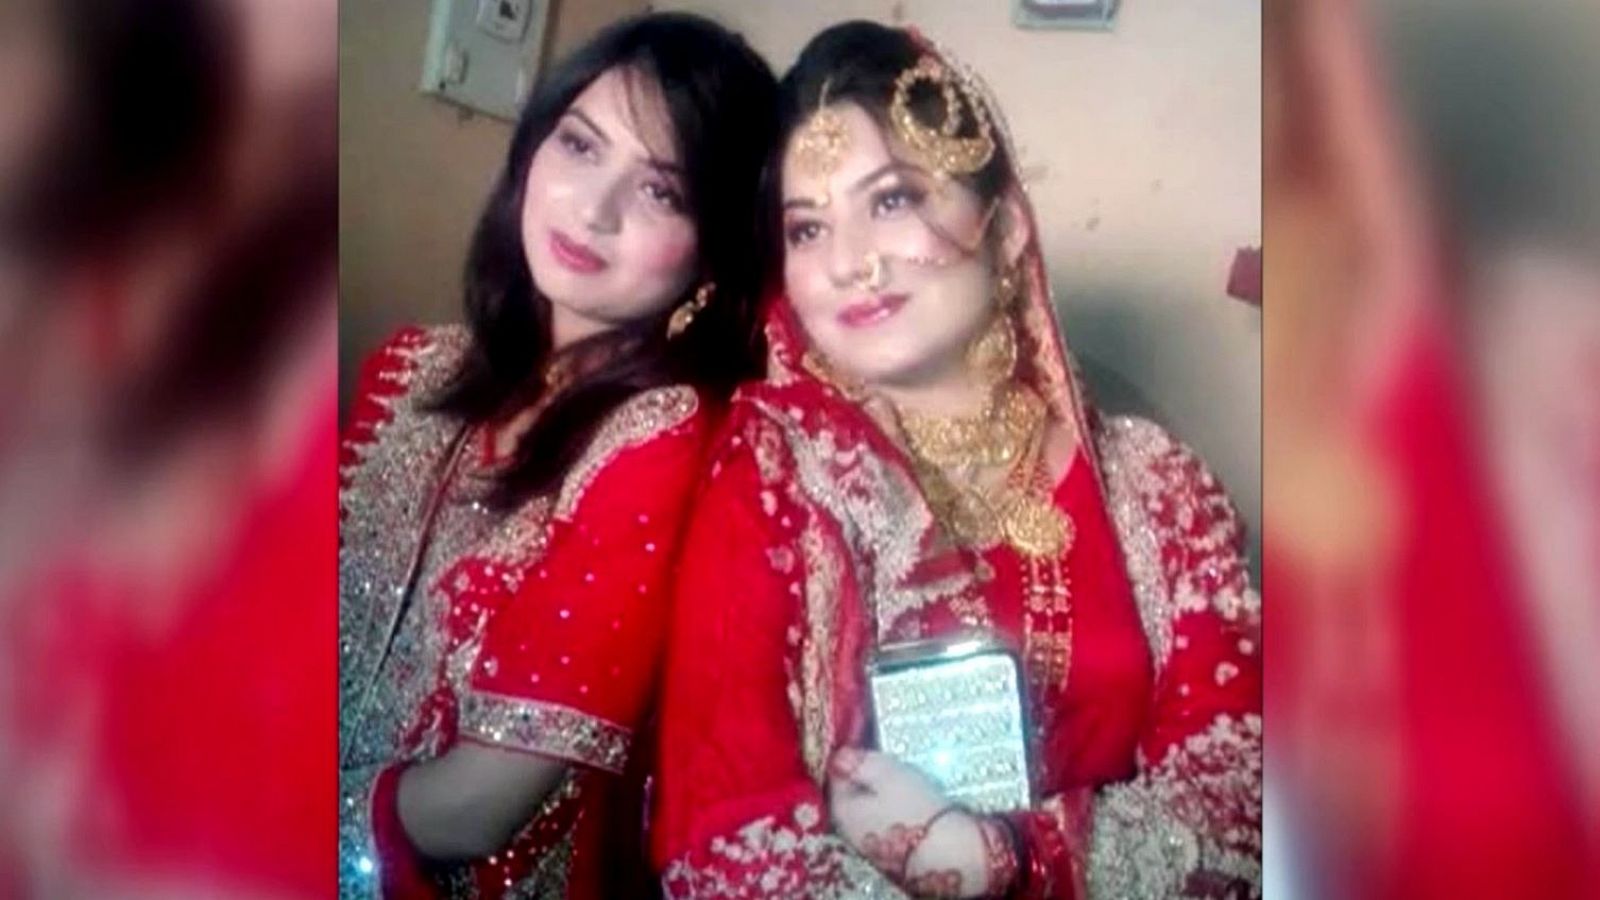 Los Mossos investigan el asesinato de dos españolas en Pakistán que rechazaron matrimonios concertados